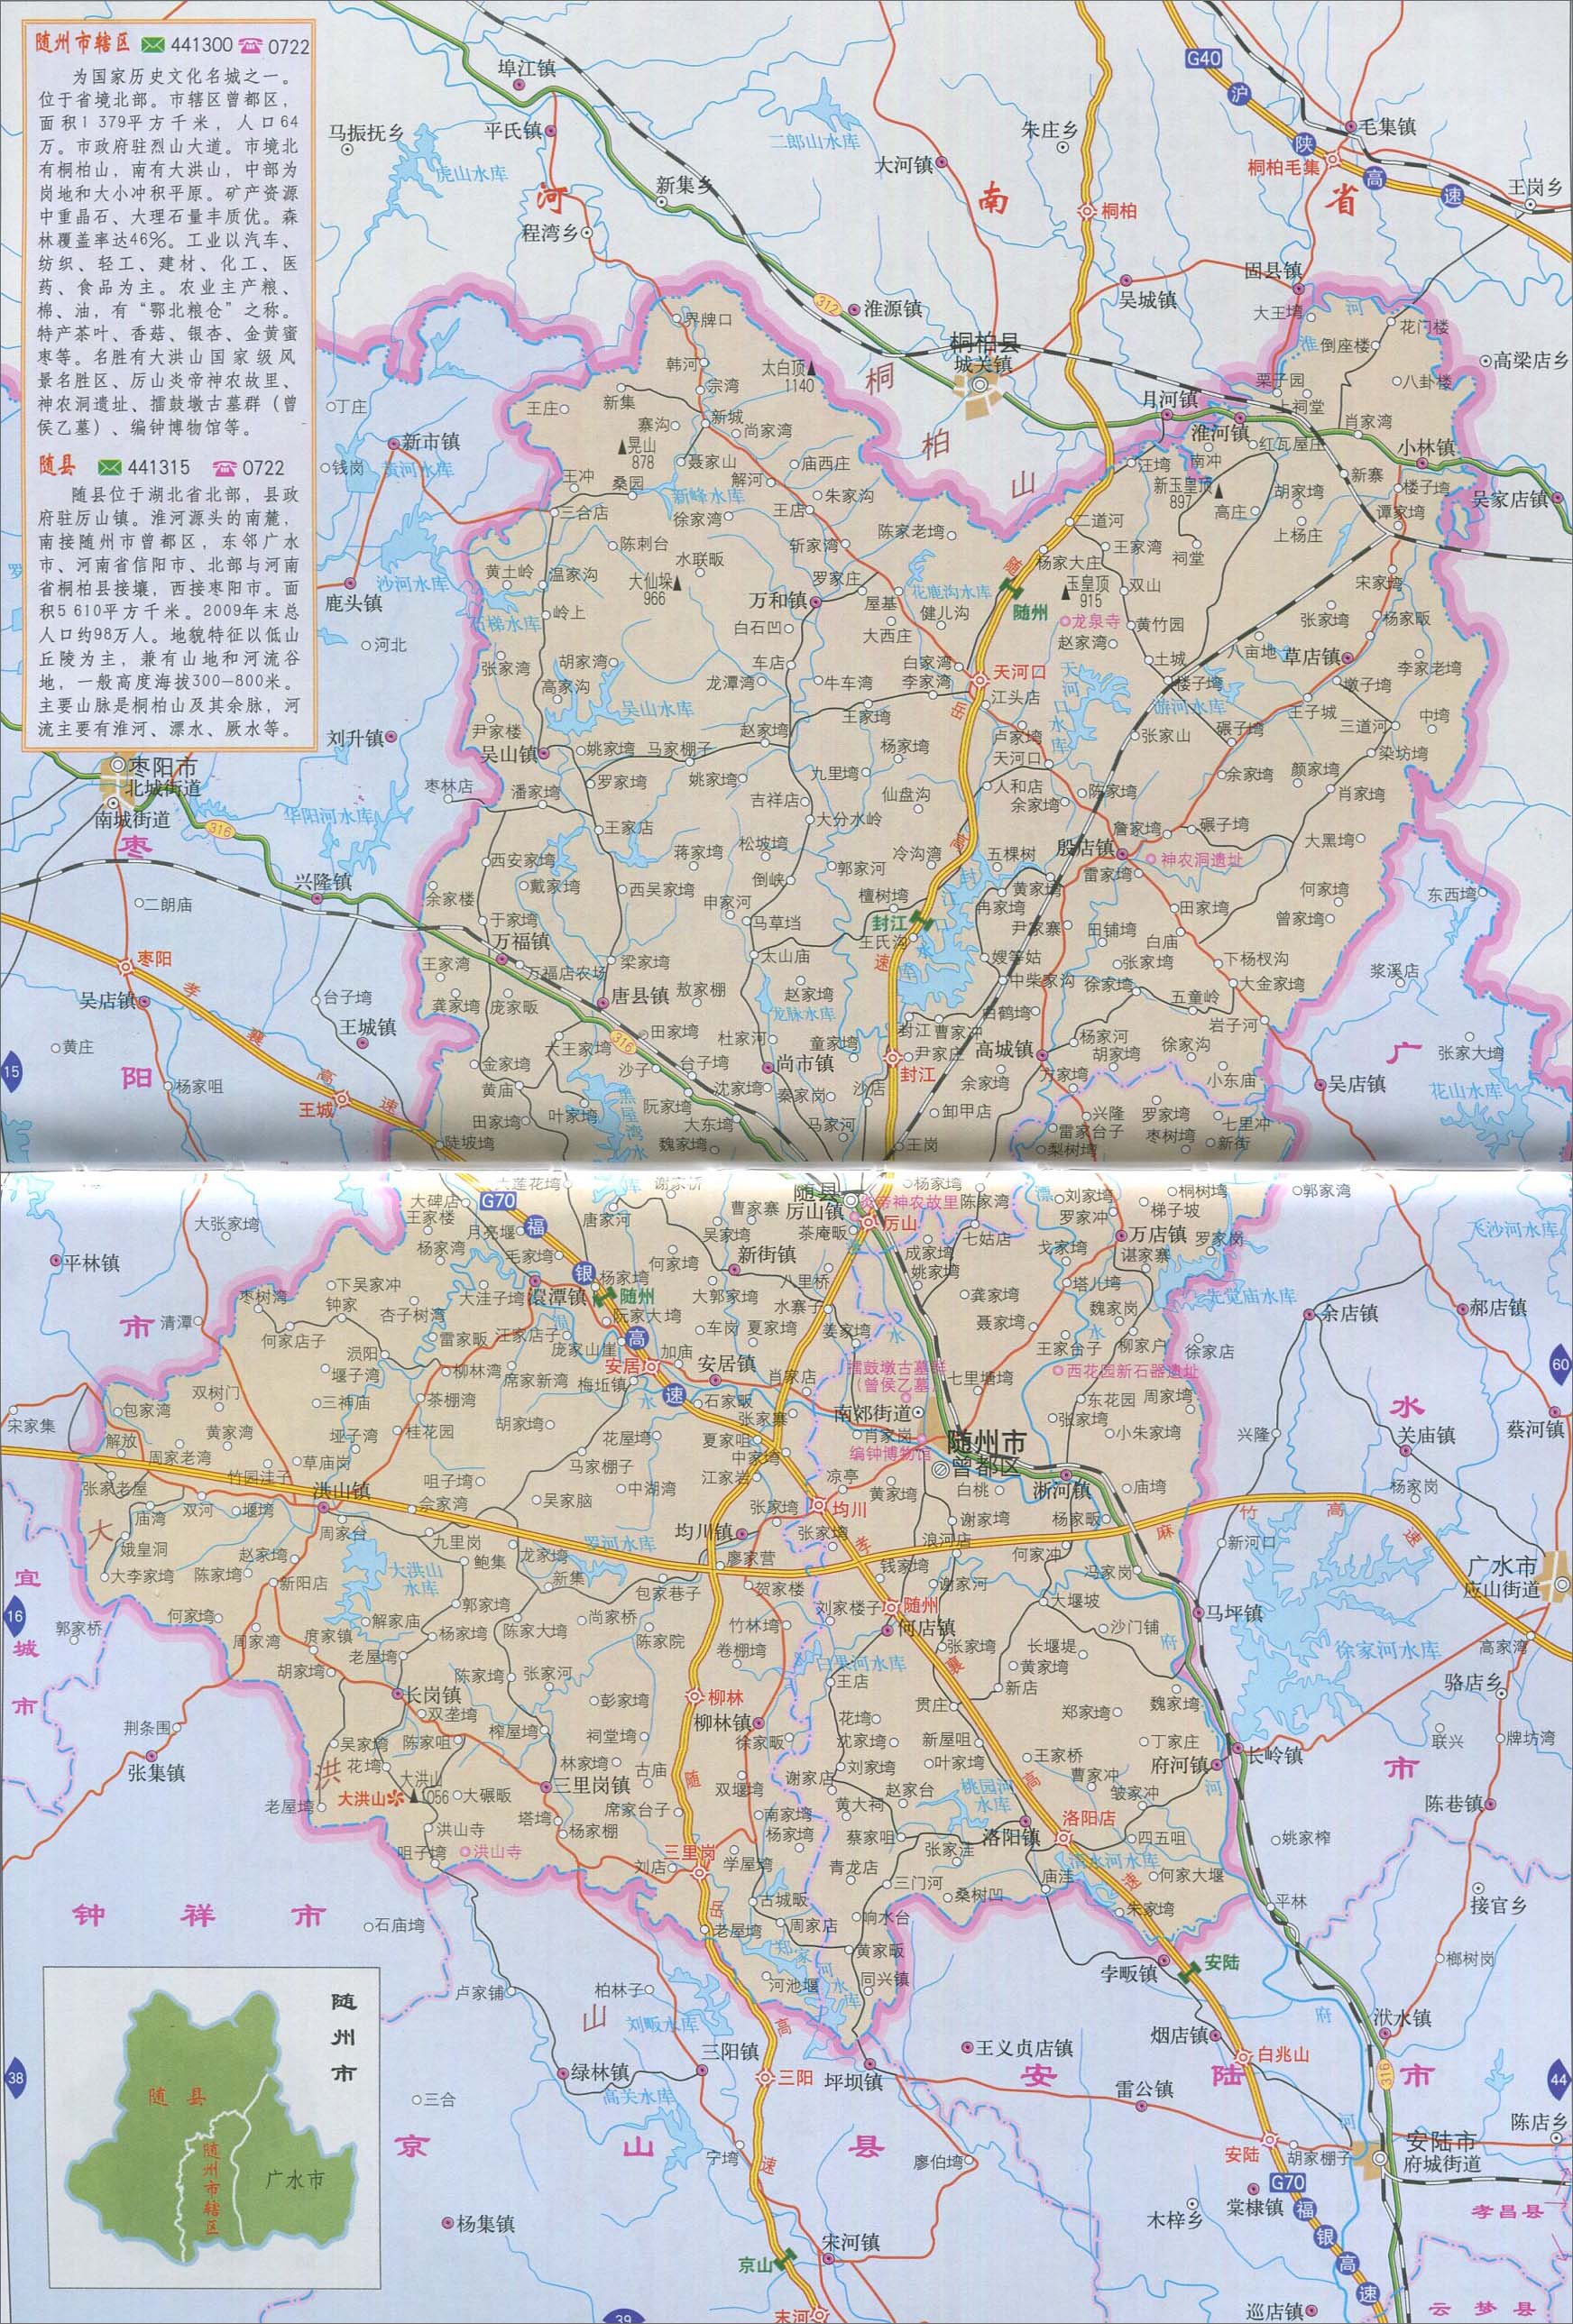 中国地图 湖北 随州市 >> 随州市辖区地图_随县地图  分类: 随州市图片